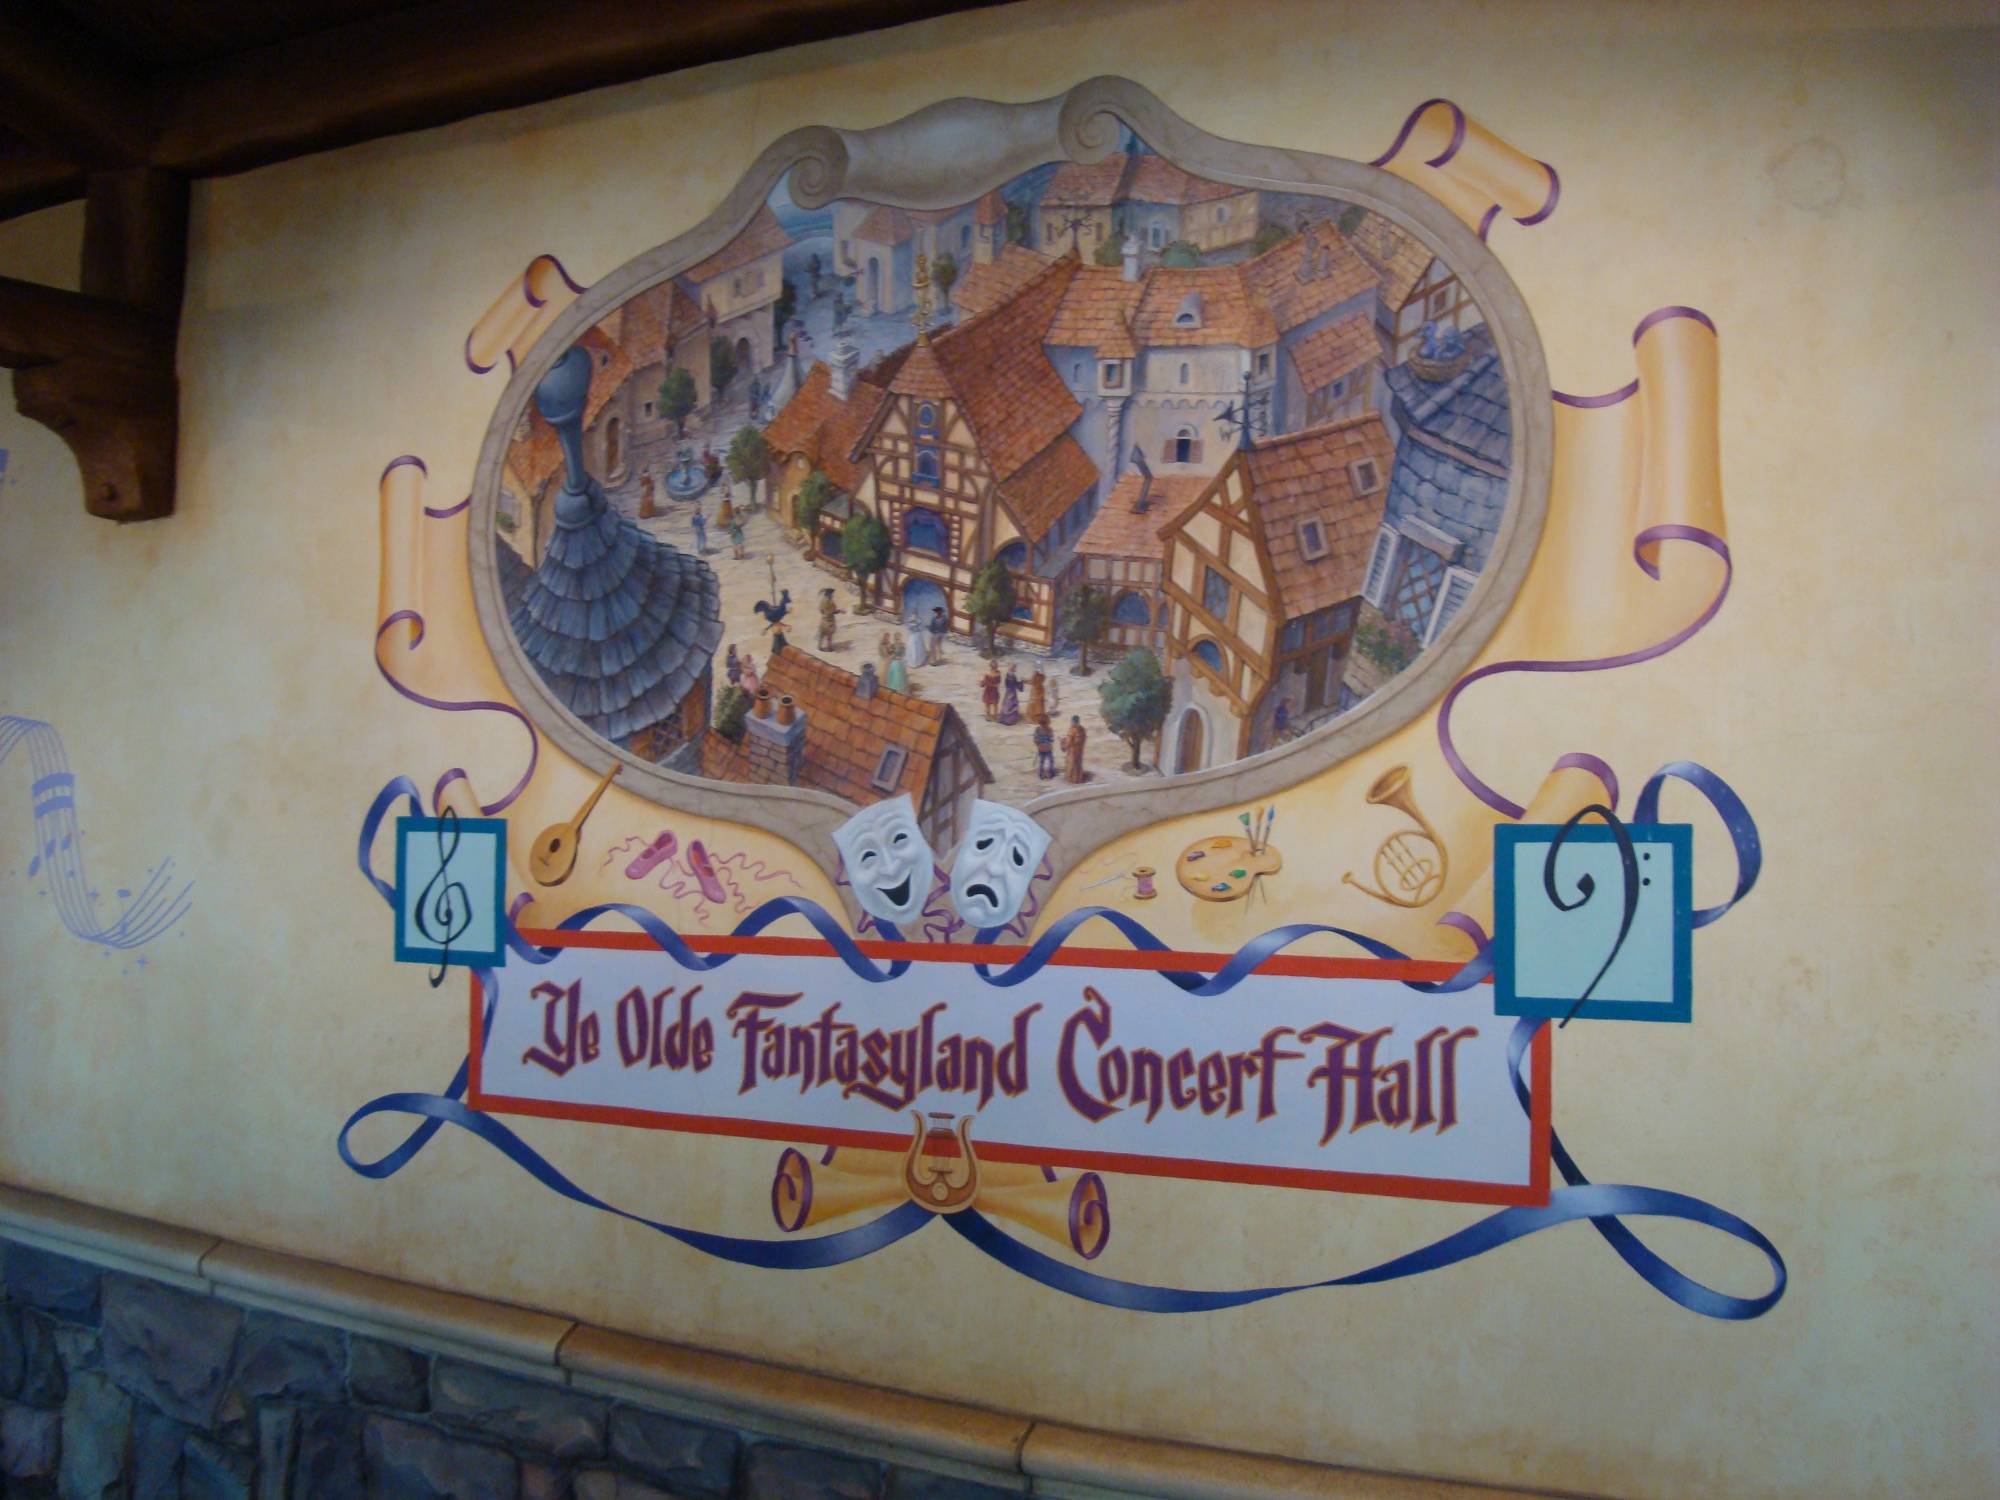 Hong Kong Disneyland - PhilharMagic Hall